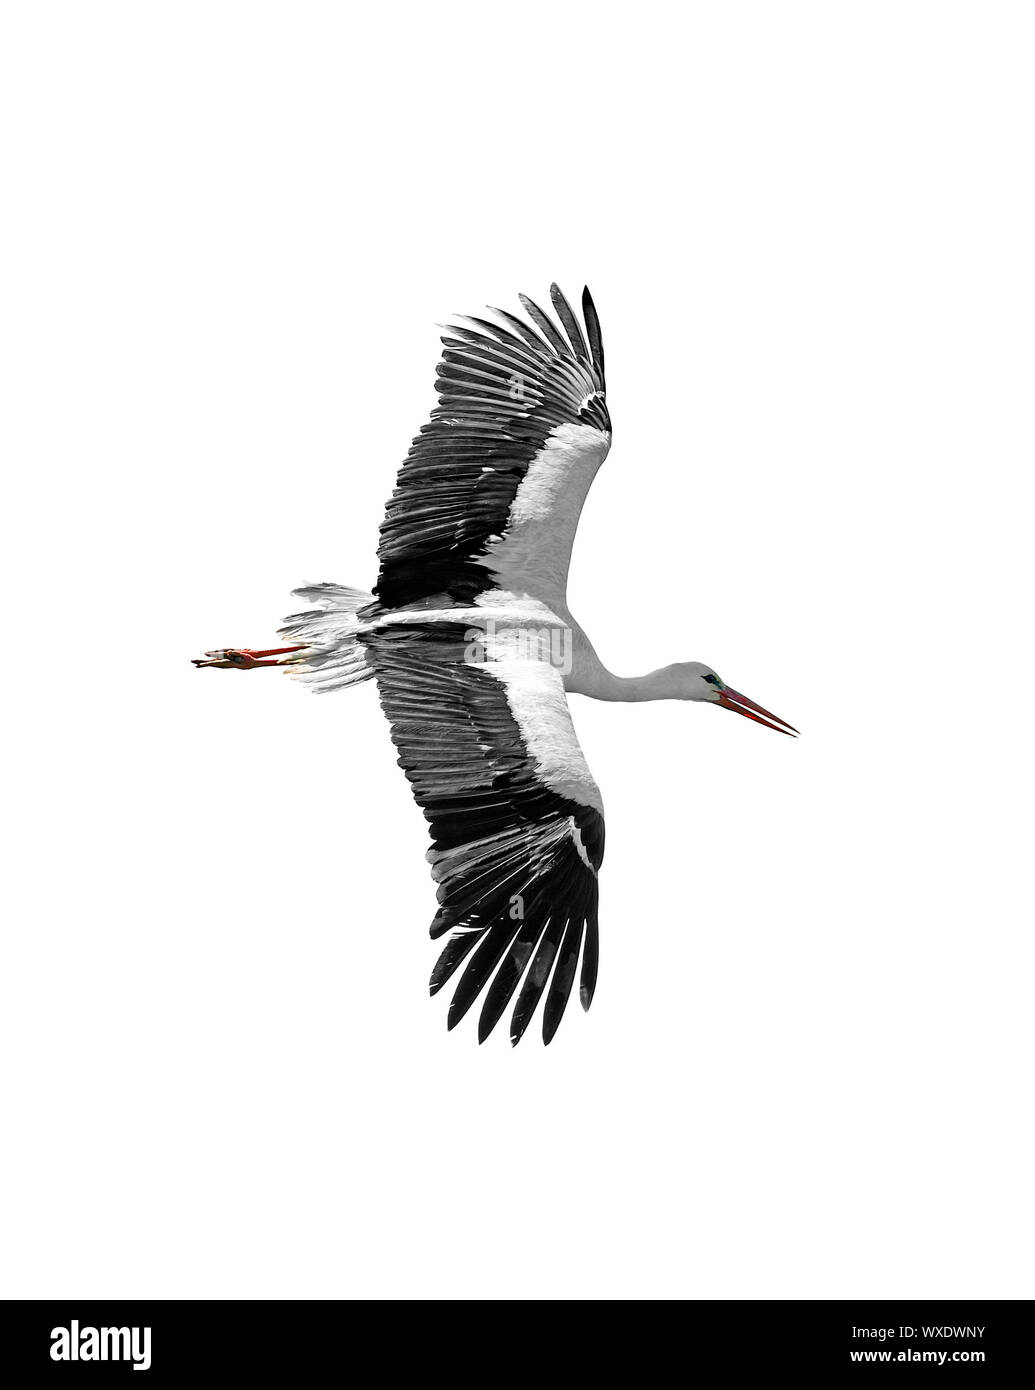 Flying stork isolated on white background Stock Photo